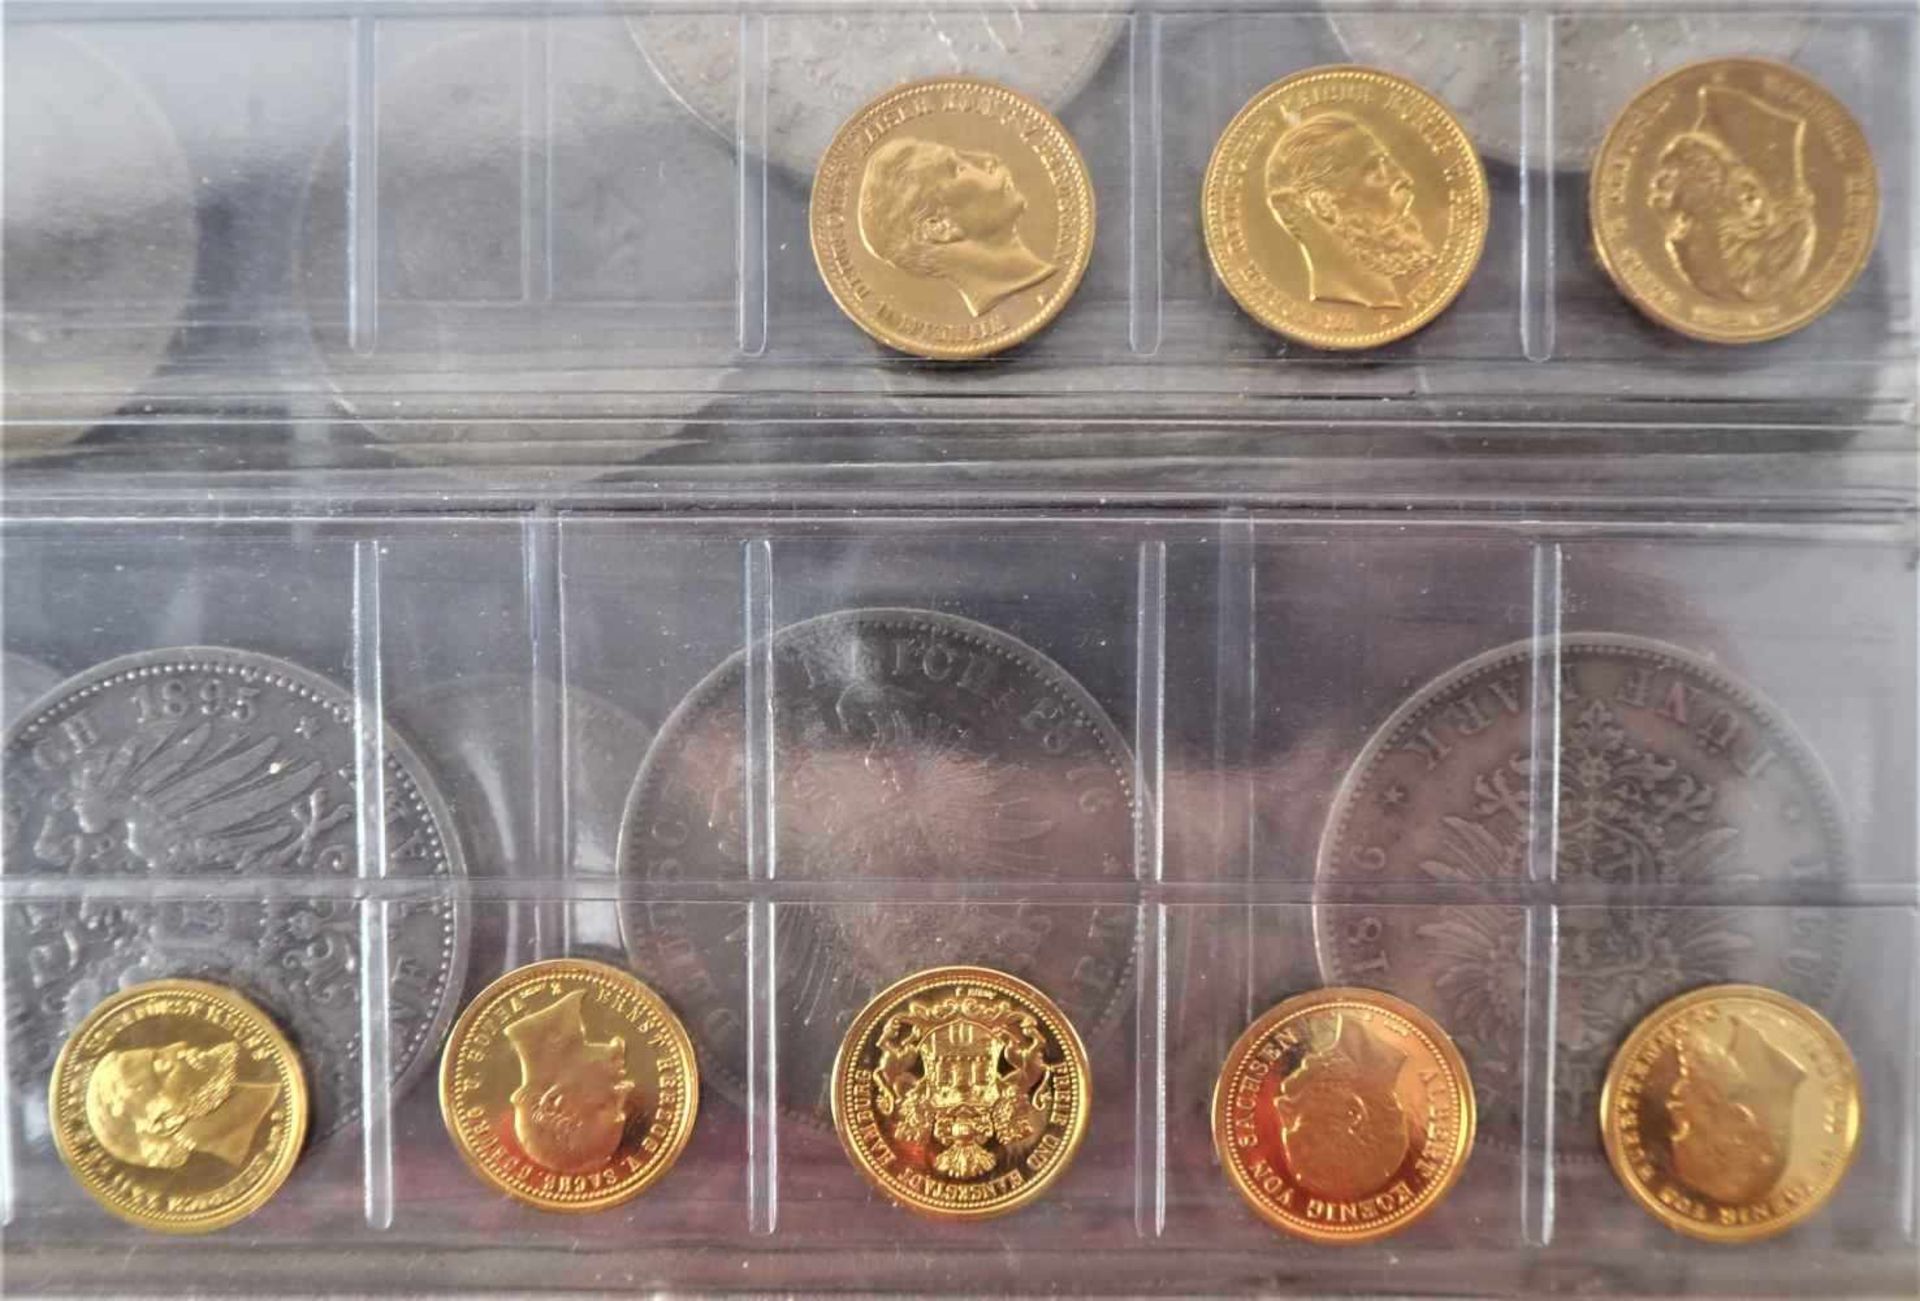 Konvolut umfangreiche Münzsammlung und Geldscheine, Reichsmark, DDR Mark, DM, internationale - Bild 8 aus 20